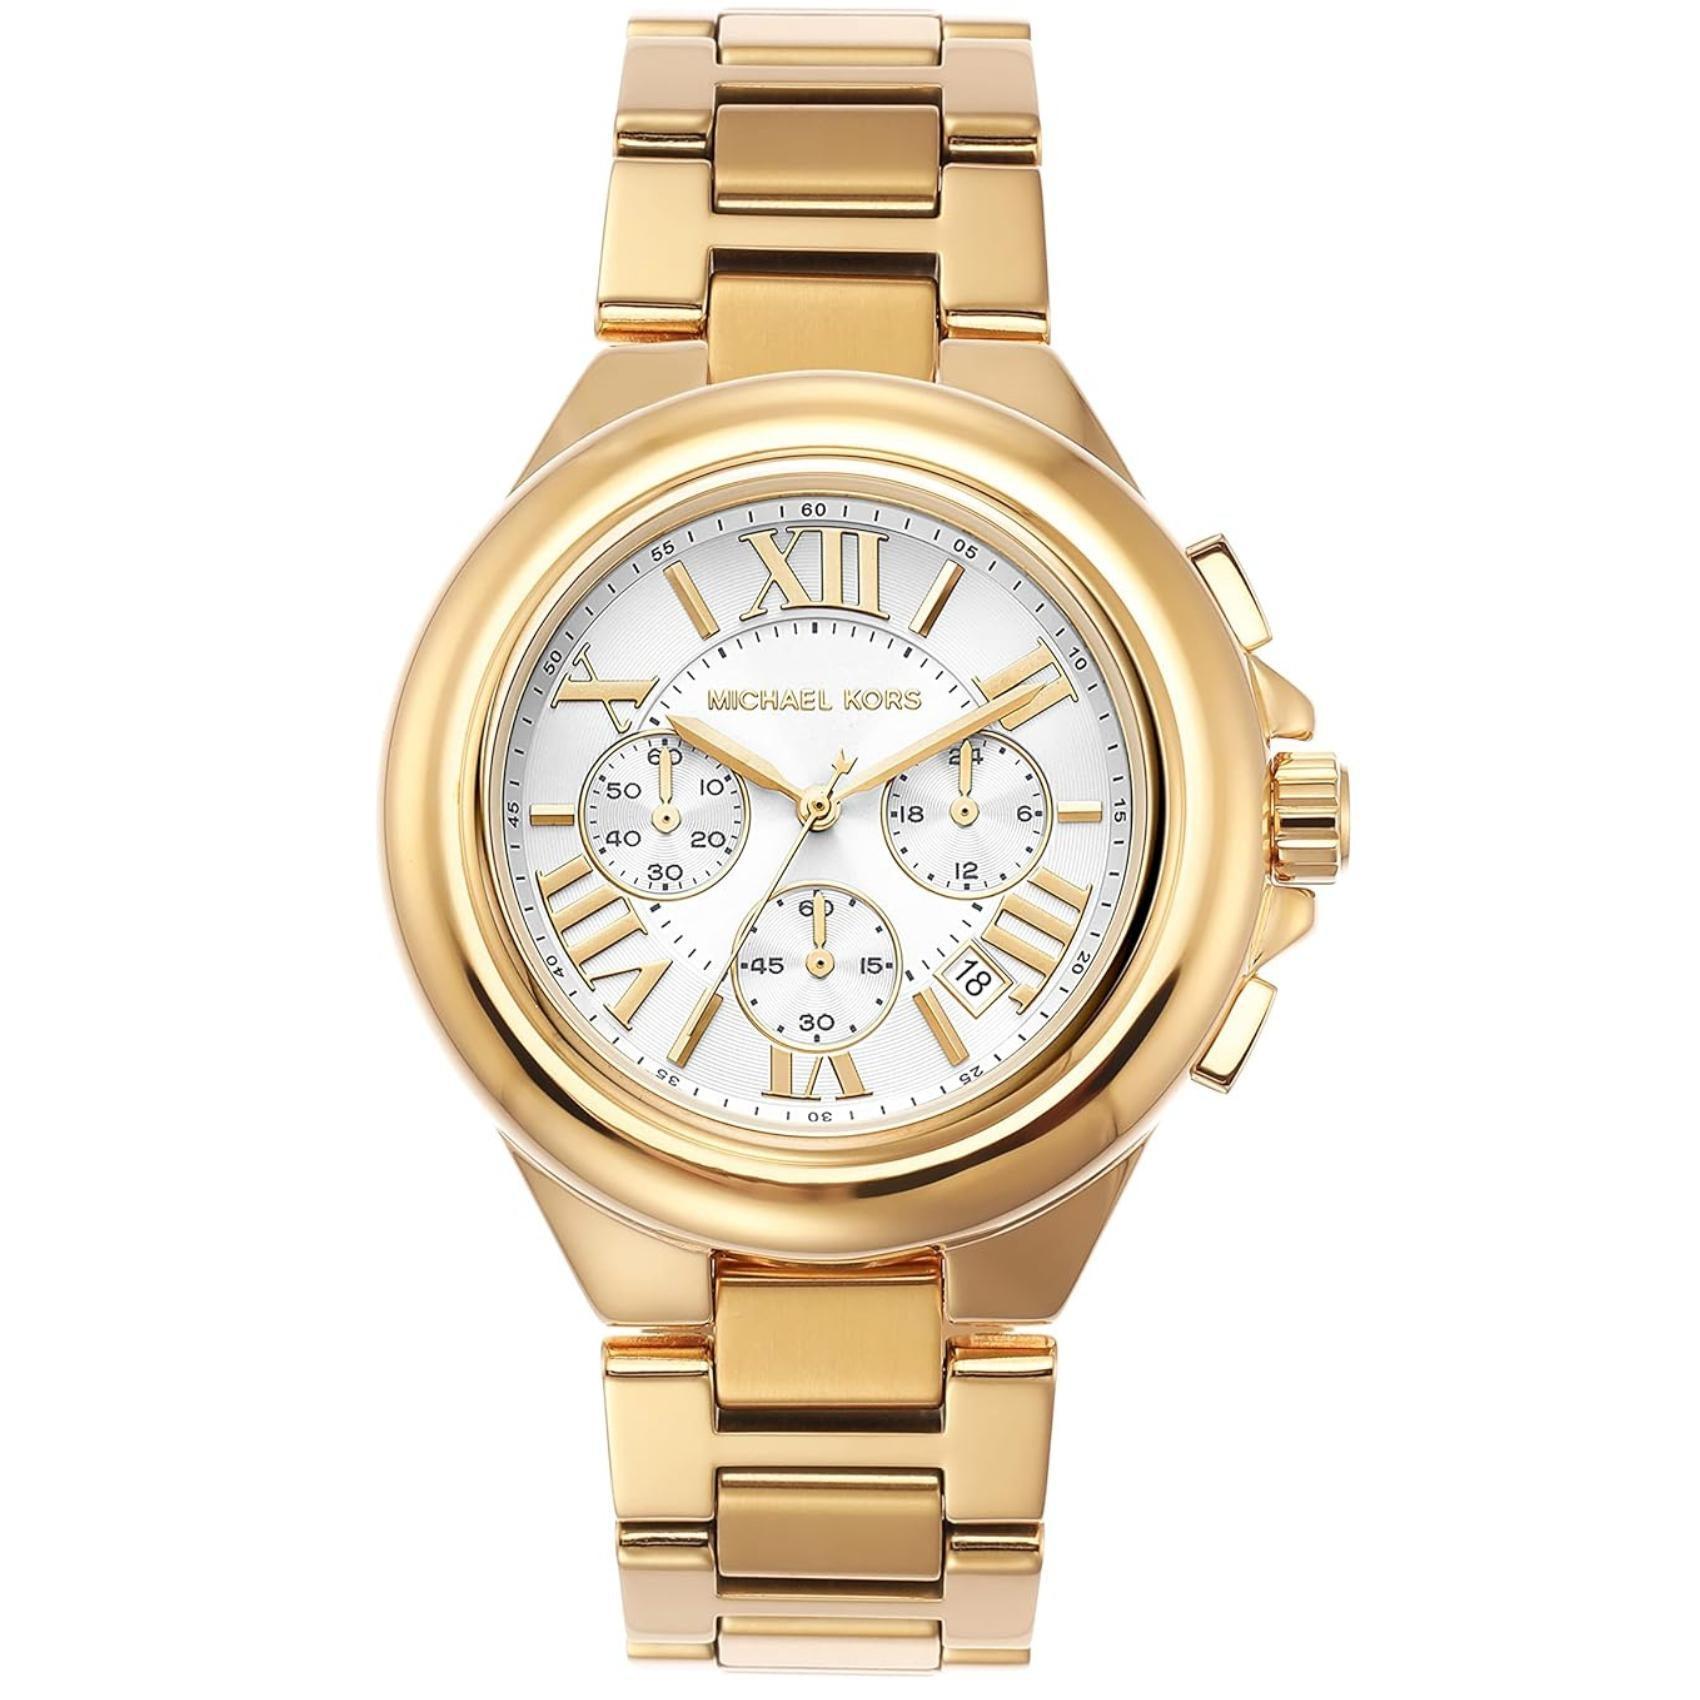 Γυναικείο ρολόι Michael Kors Camille MK7270 χρονογράφος με χρυσό ατσάλινο μπρασελέ, στρογγυλό άσπρο καντράν με λατινικούς αριθμούς και στεφάνι 43mm.